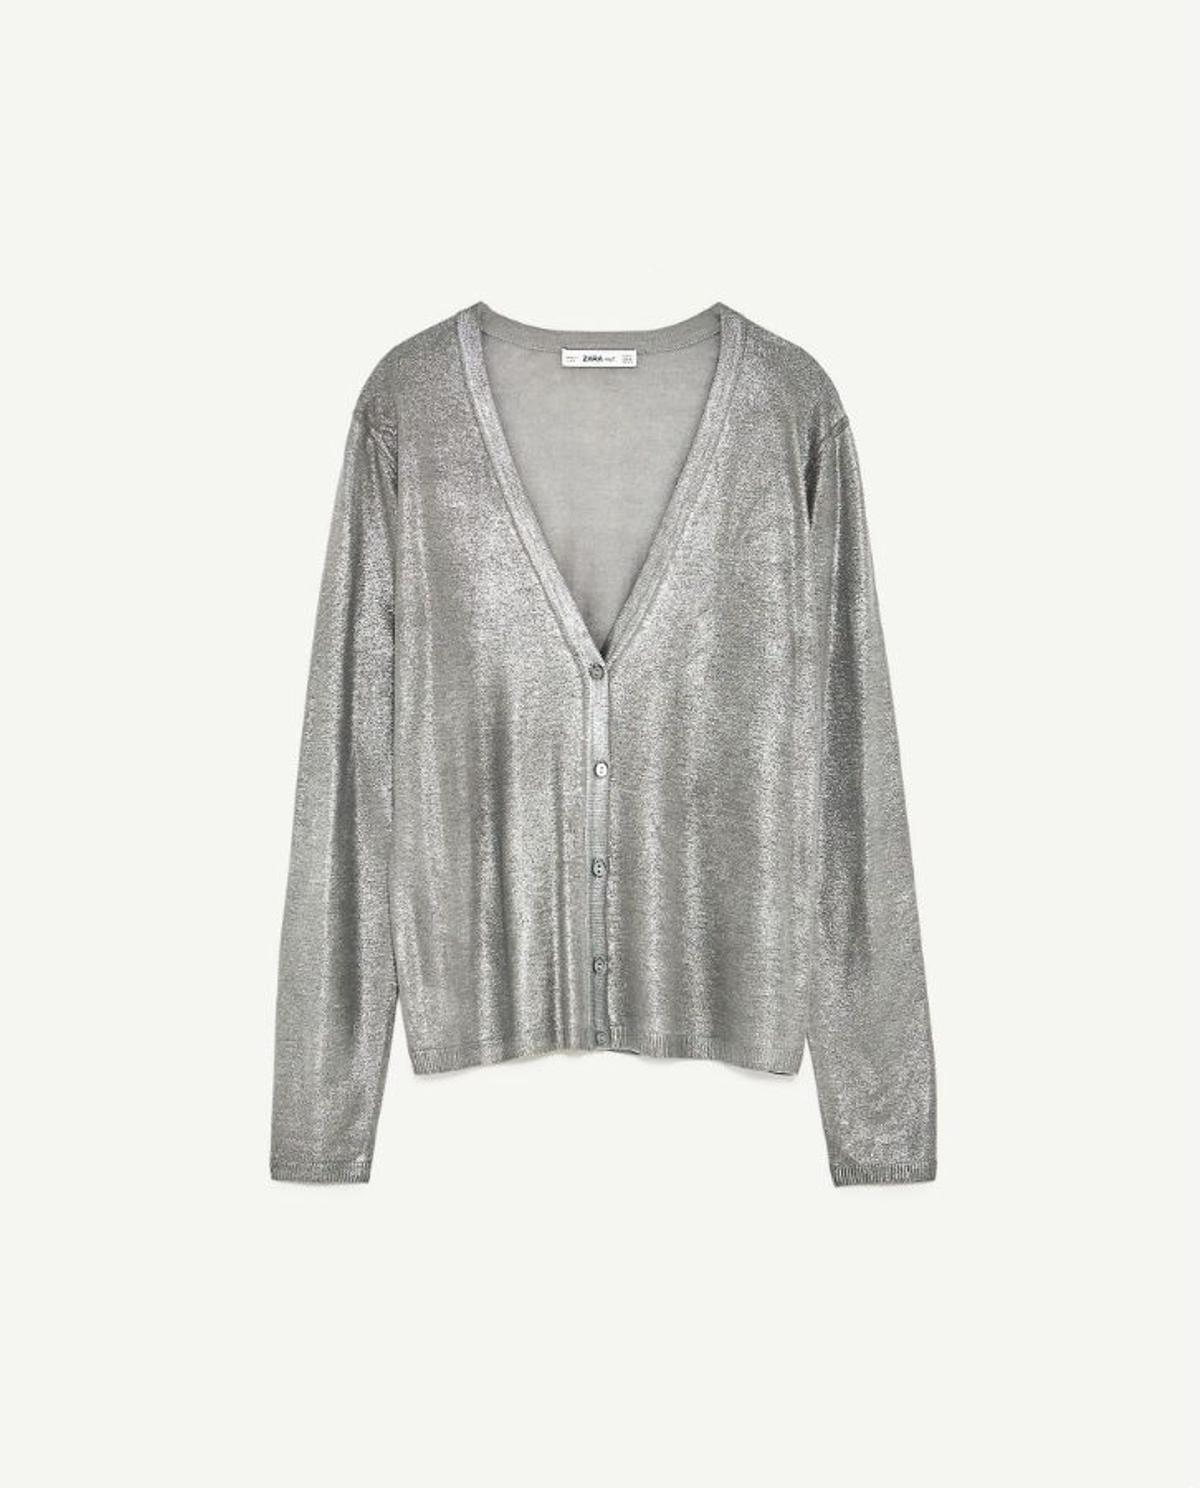 Prendas metalizadas para el verano: chaqueta de Zara